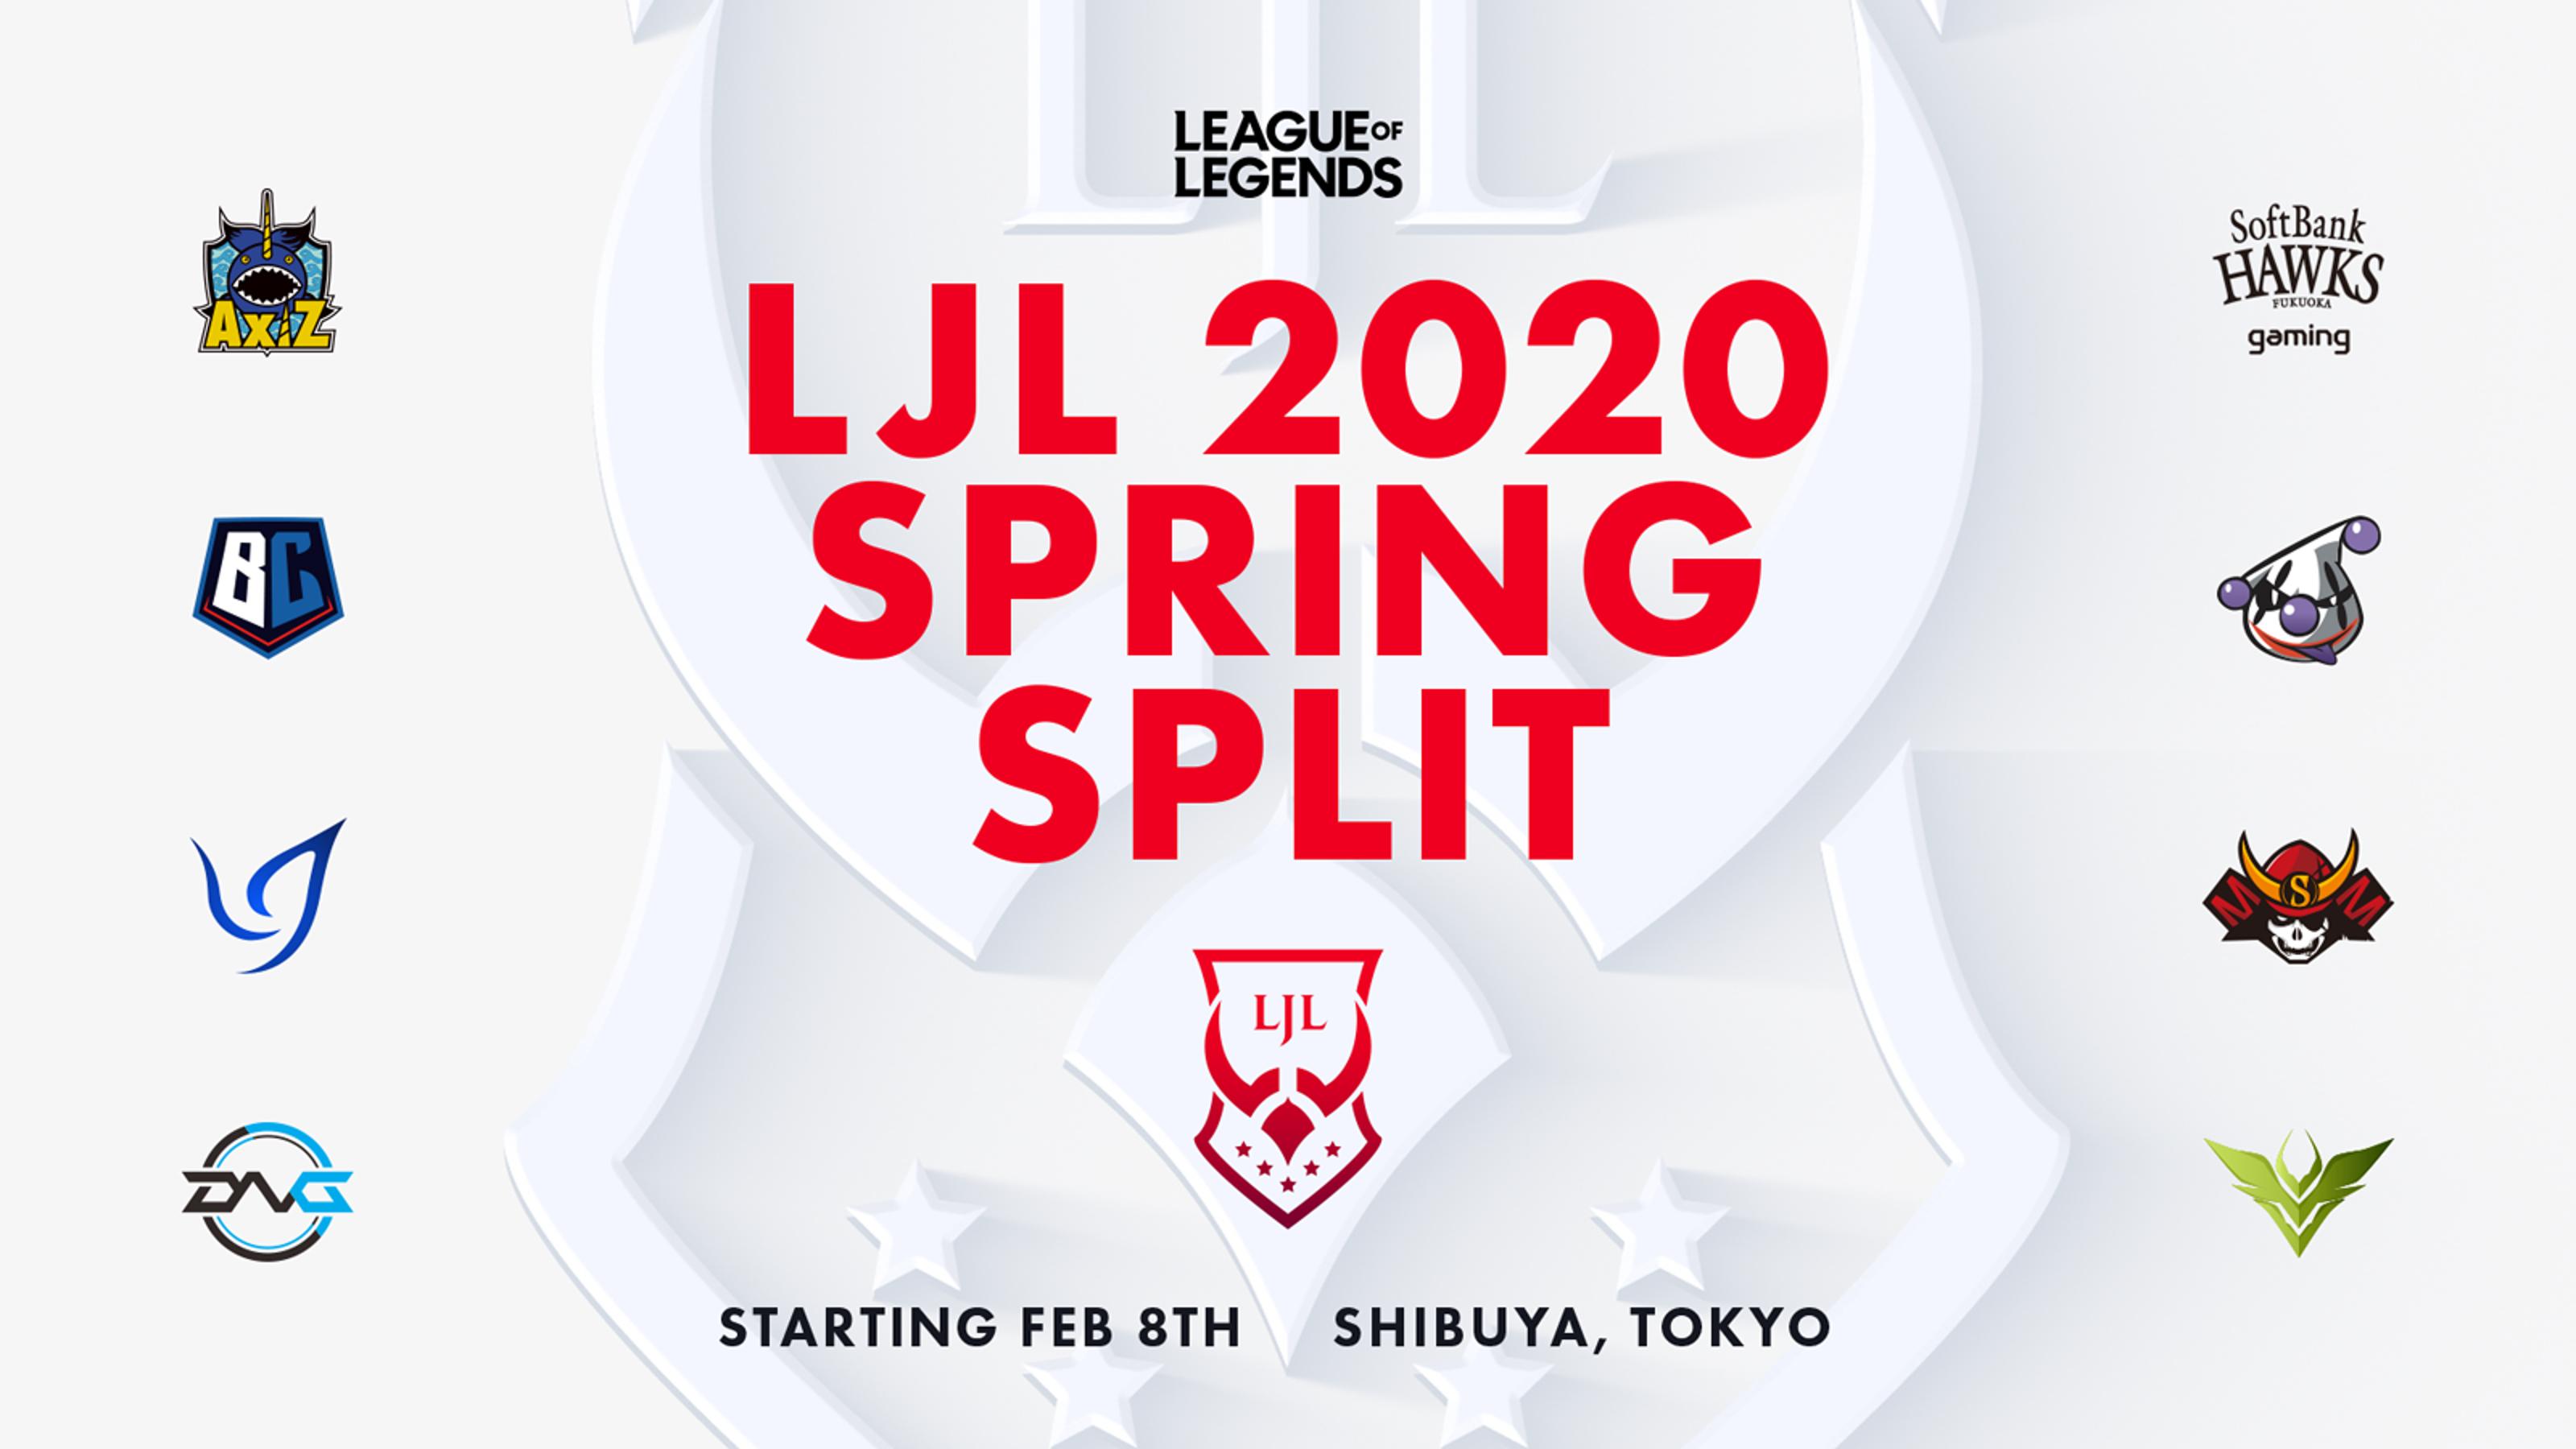 LJL 2020 Spring Split feature image